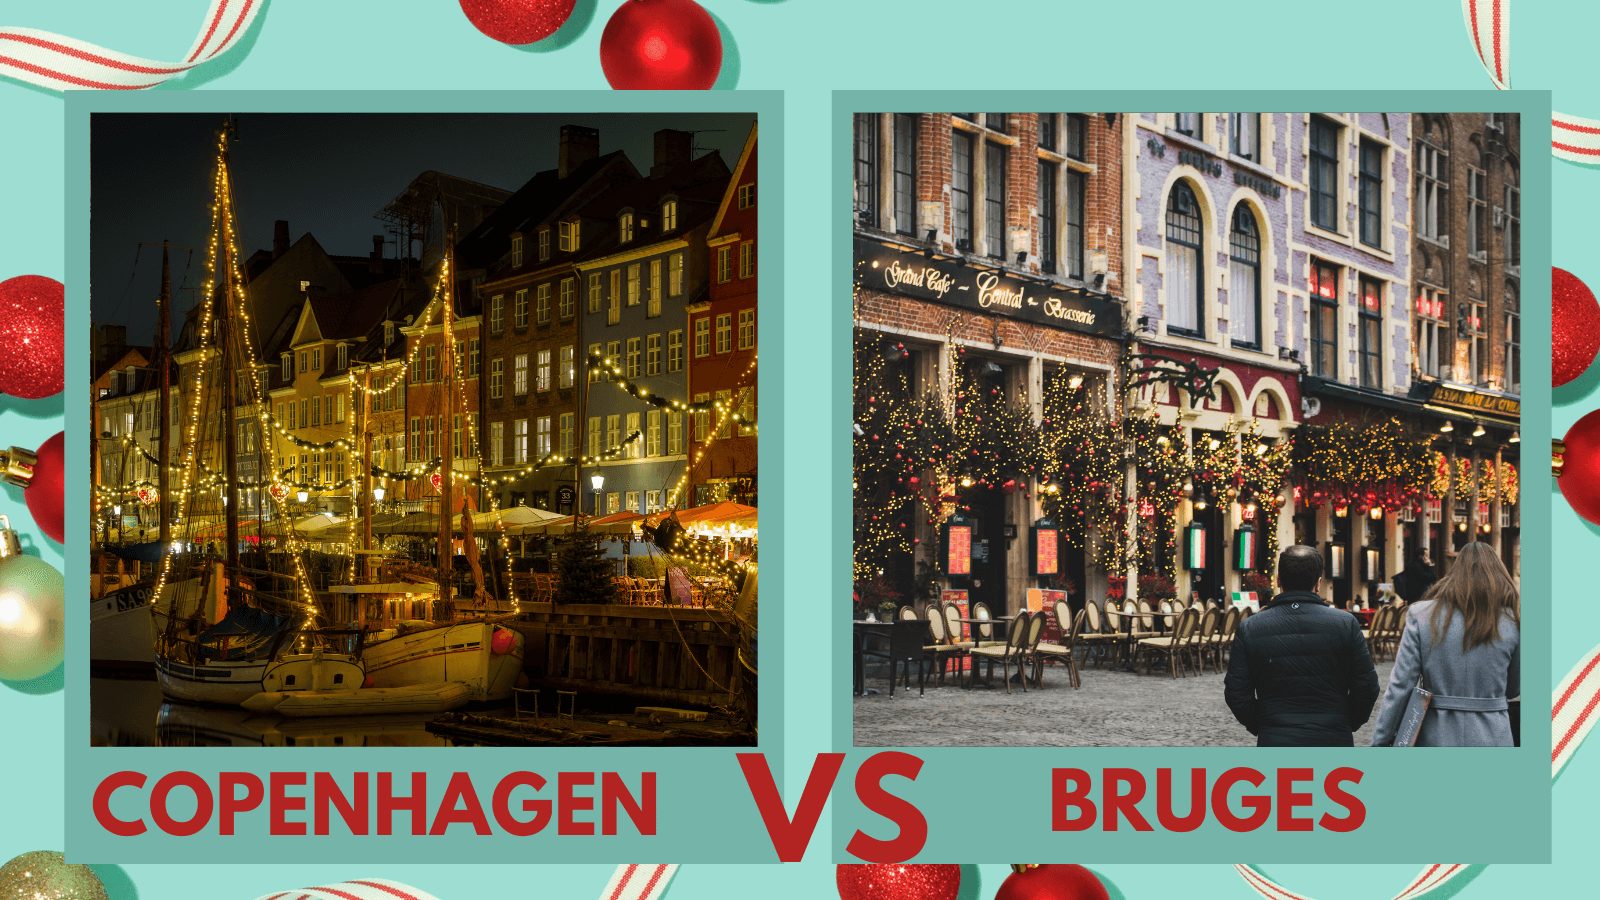 Copenhagen vs Bruges